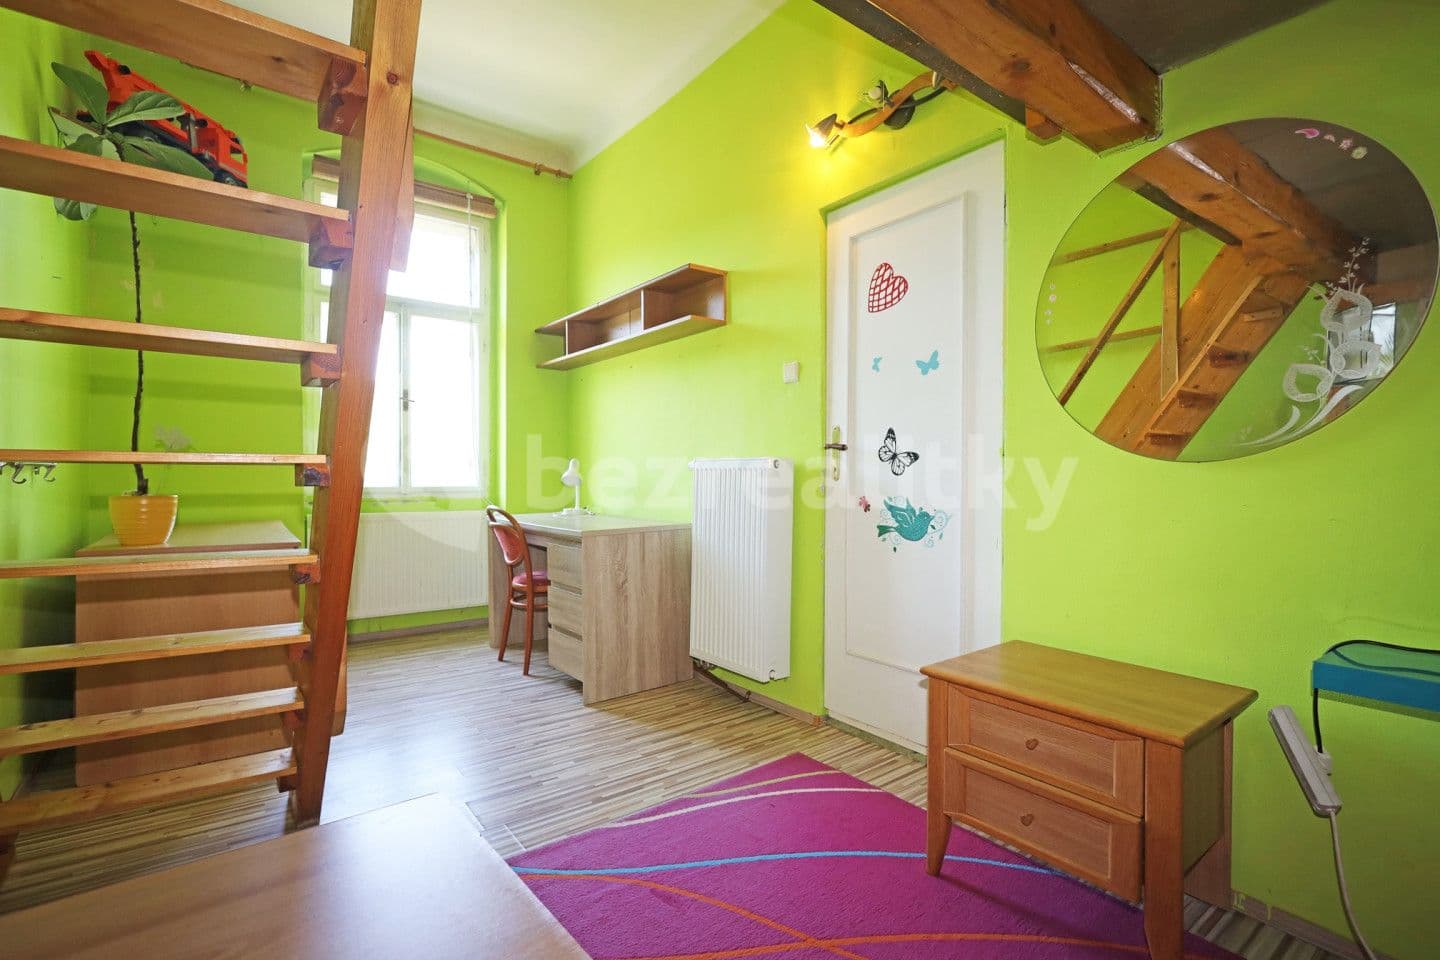 2 bedroom flat for sale, 60 m², Nebozízek, Karlovy Vary, Karlovarský Region